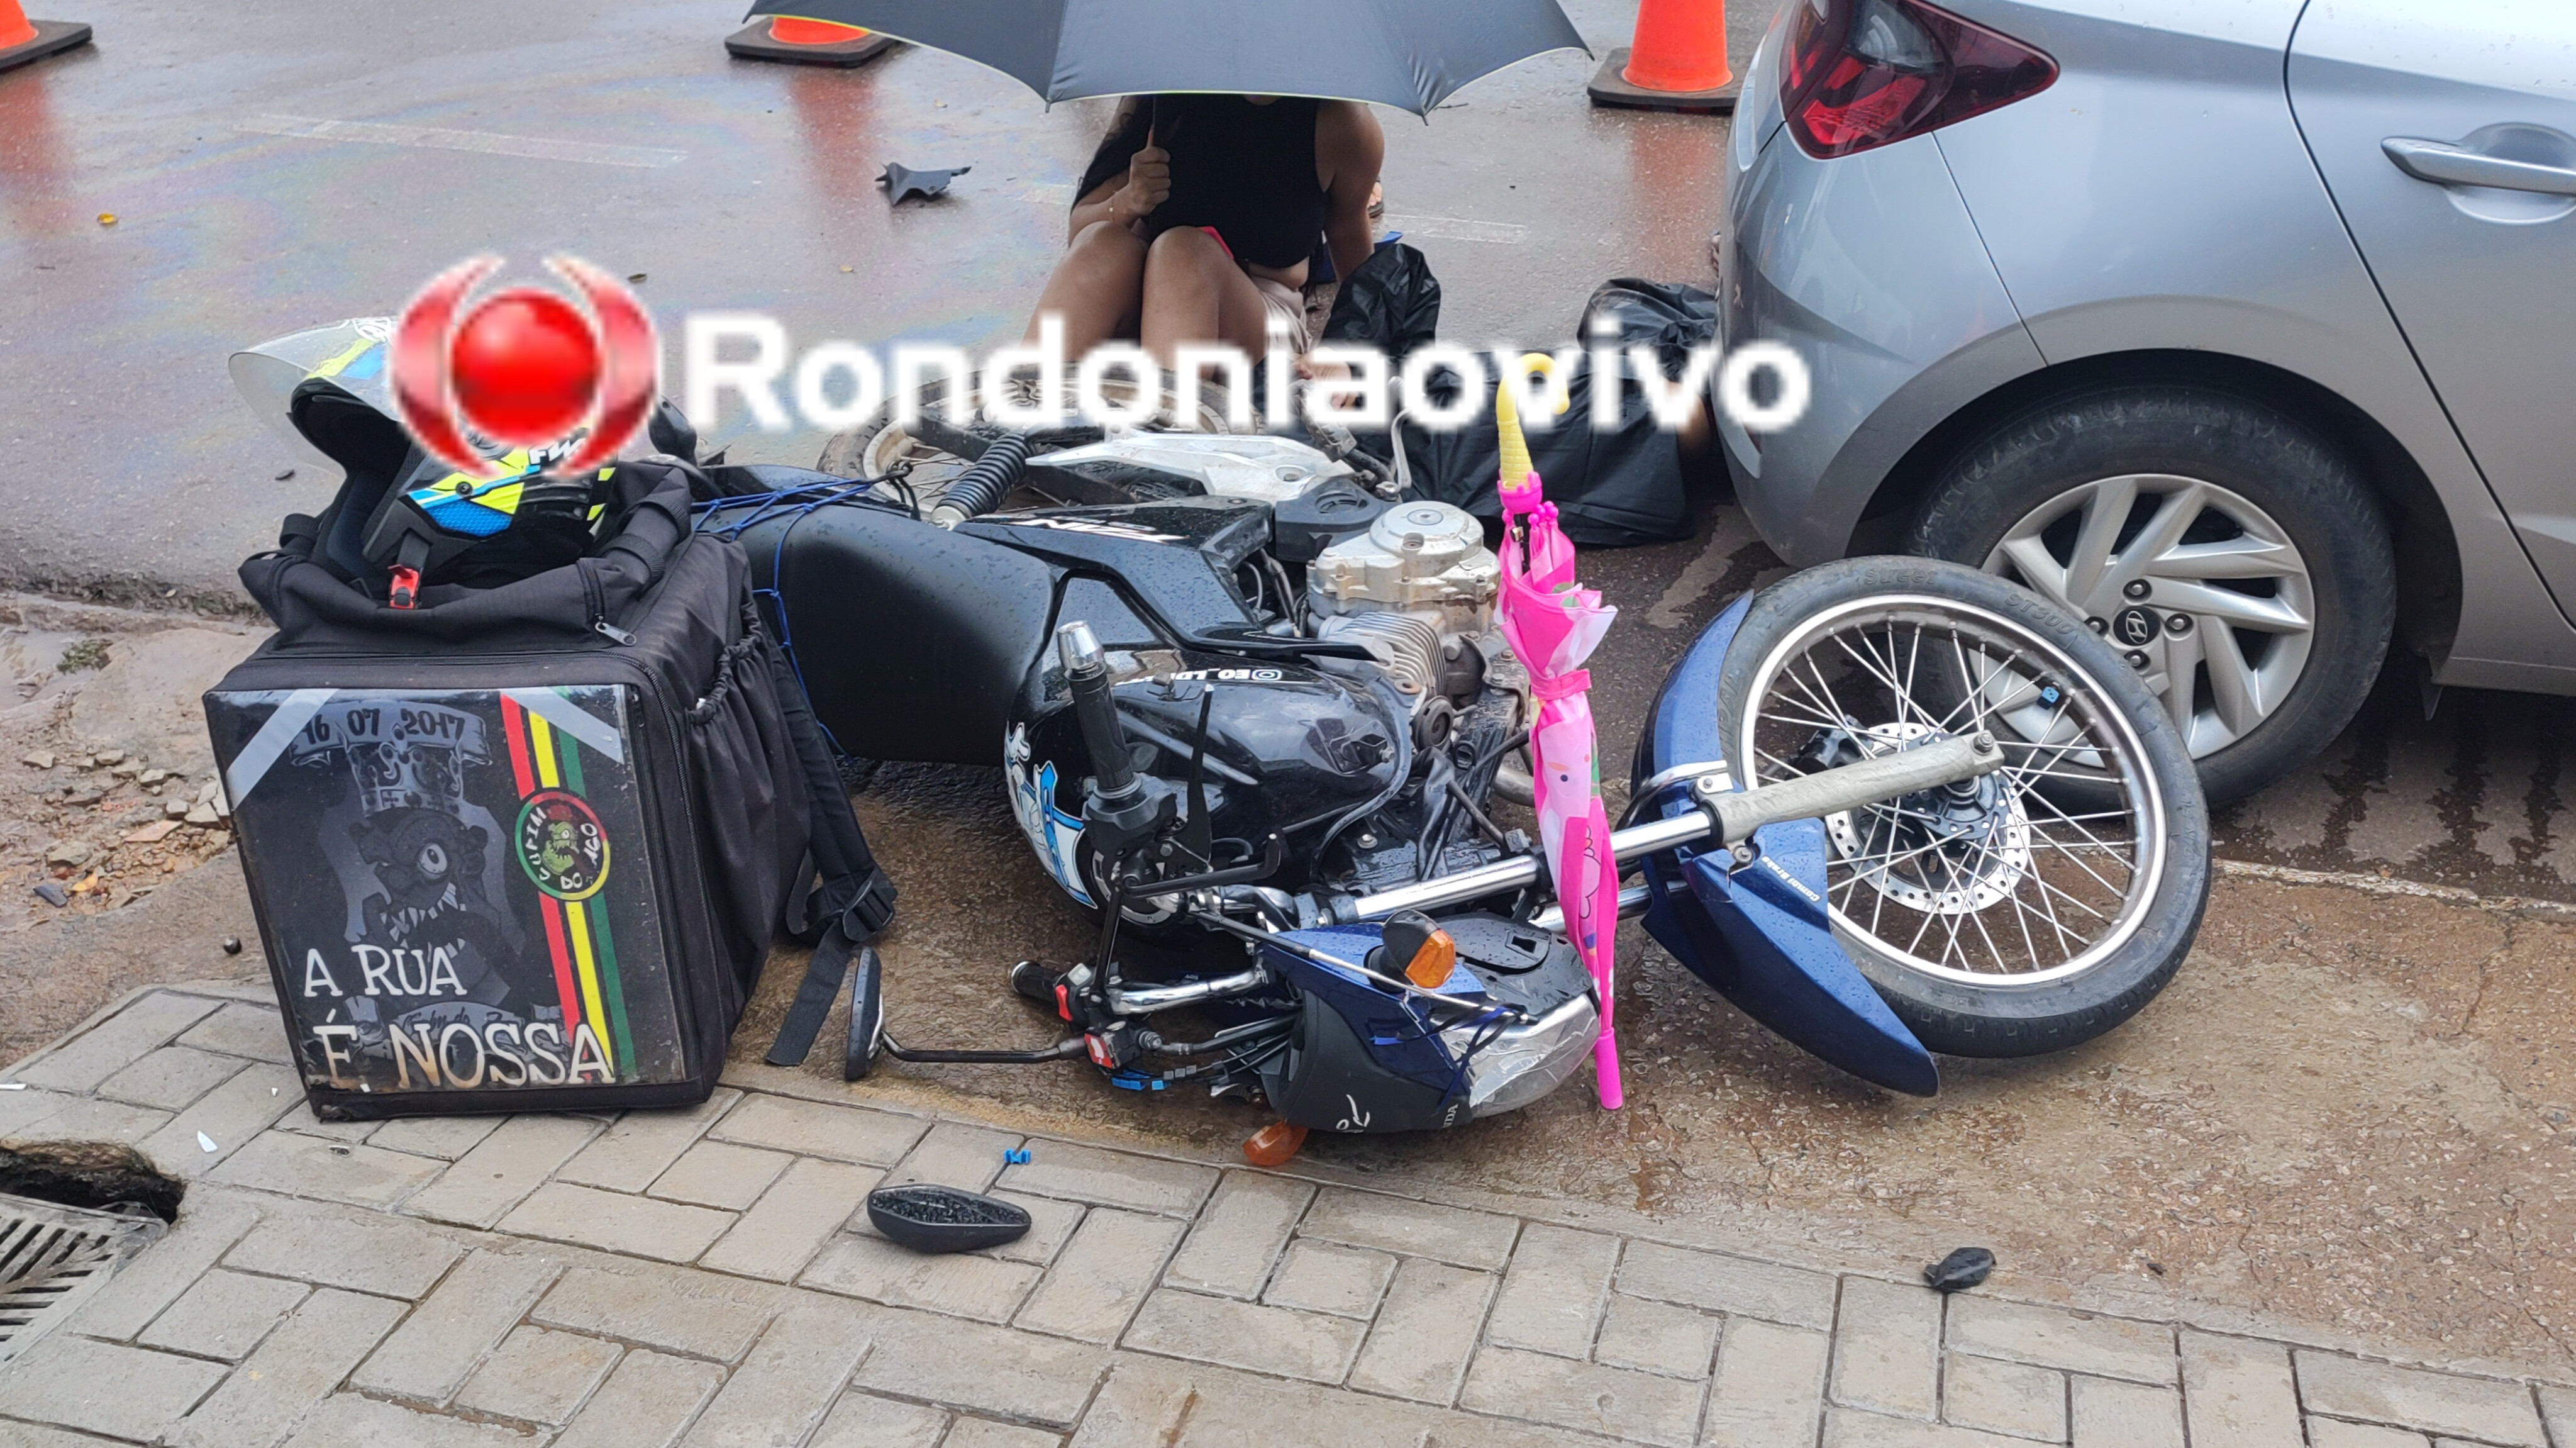 URGENTE: Pajero sai de garagem e provoca grave acidente com motoboy